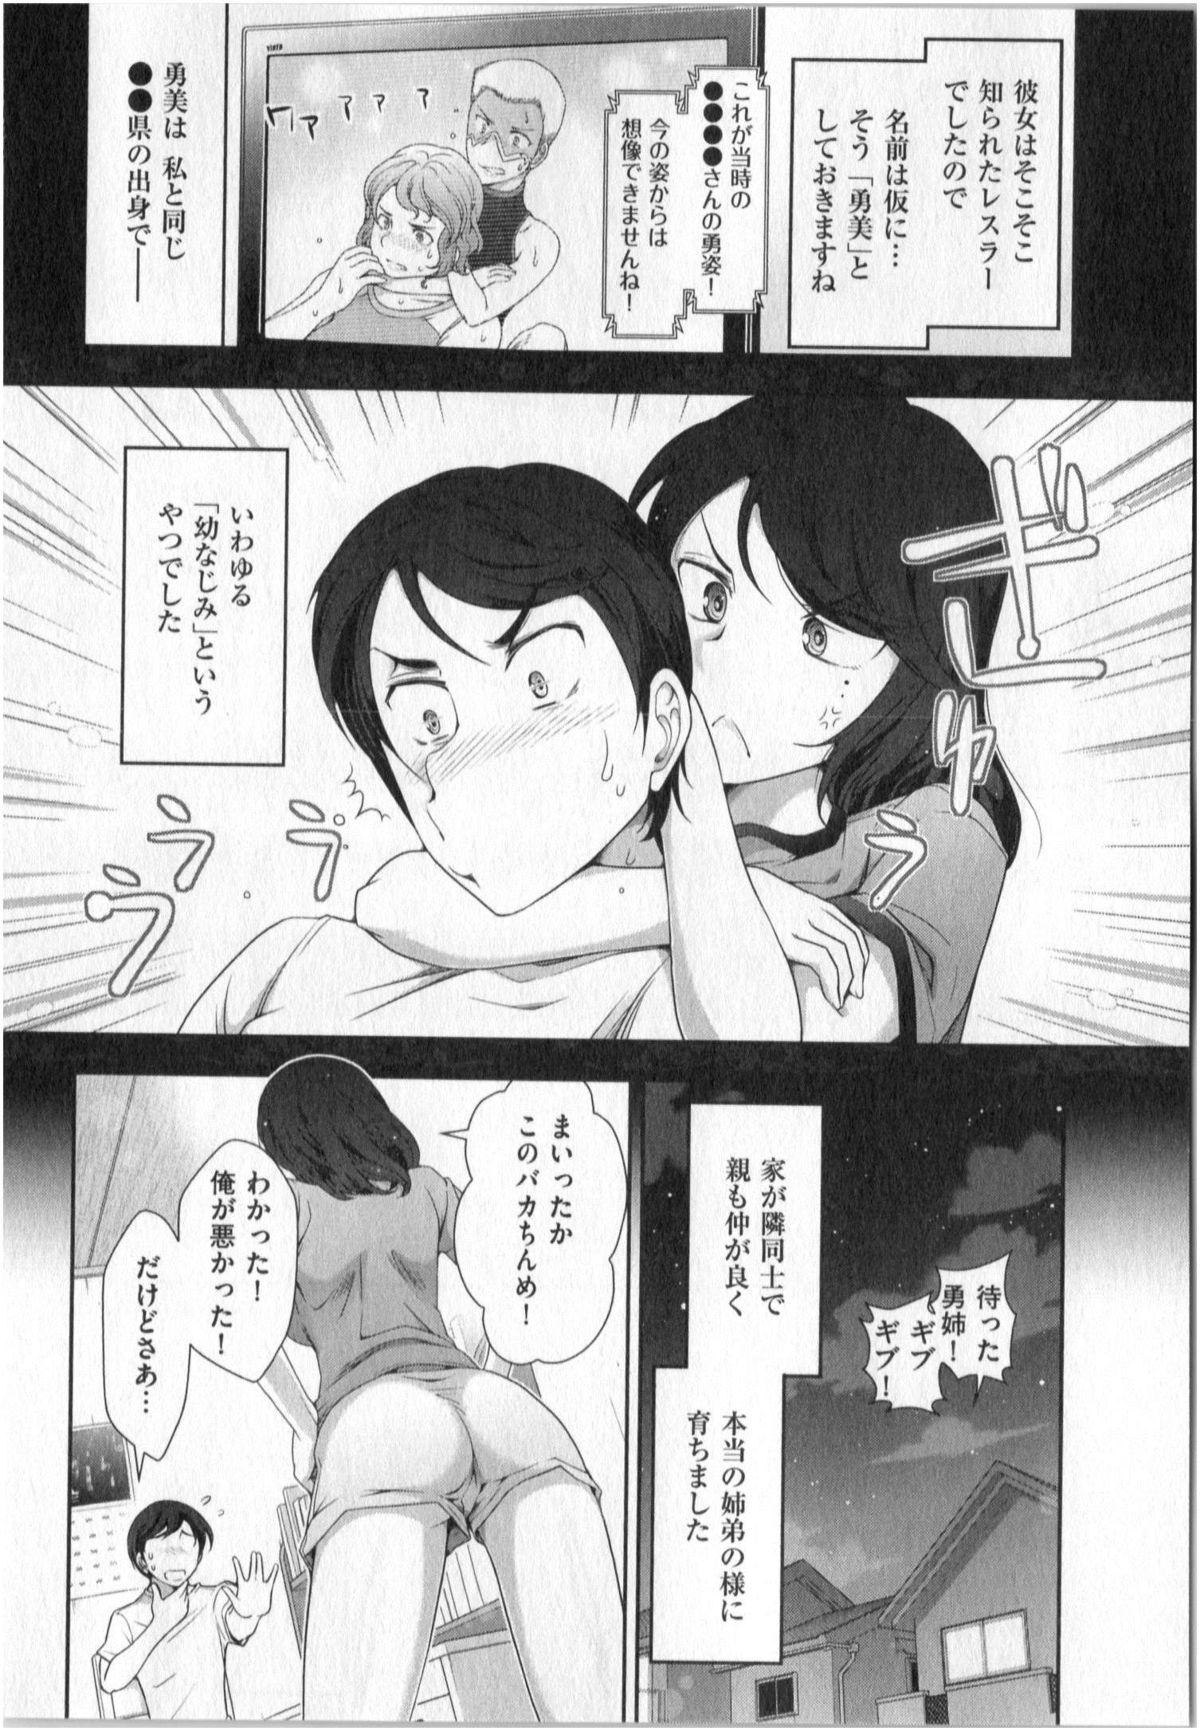 Yonimo Ecchi na Toshidensetsu vol. 01 85